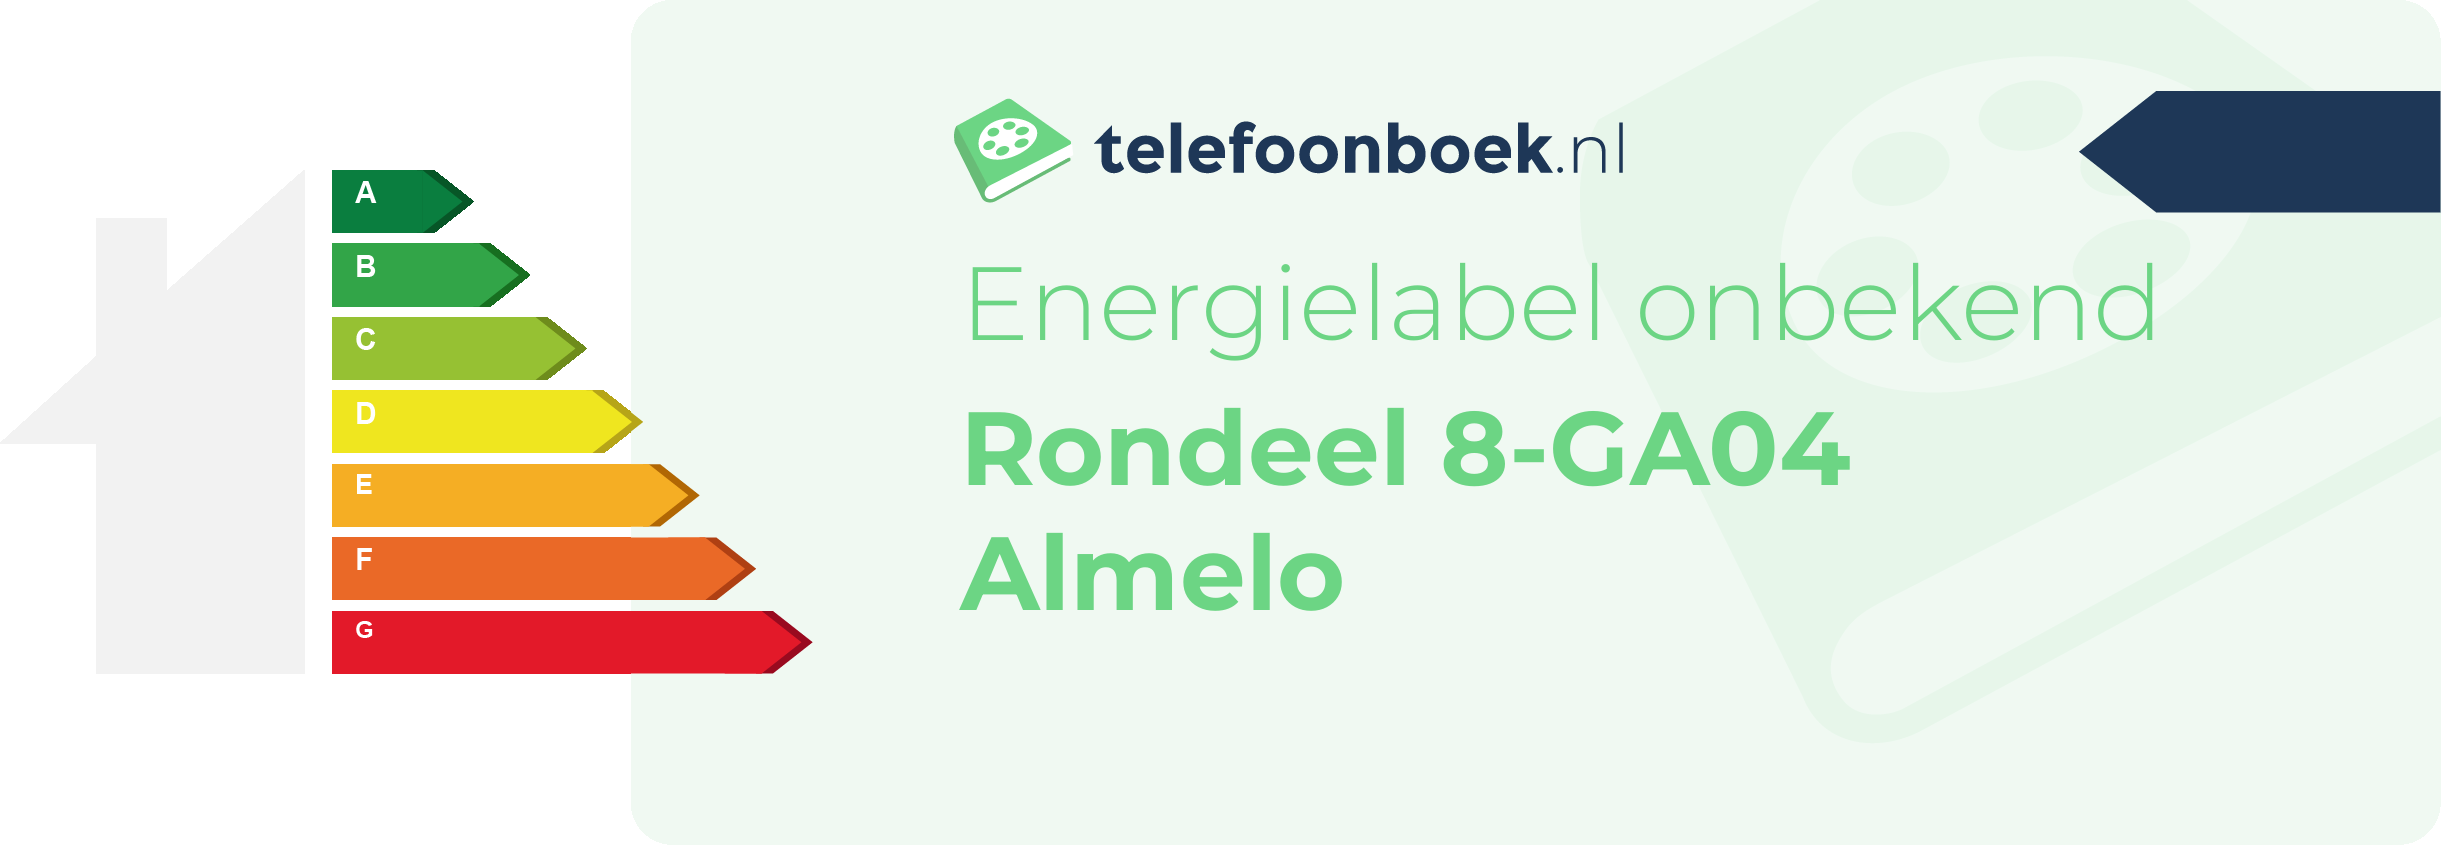 Energielabel Rondeel 8-GA04 Almelo